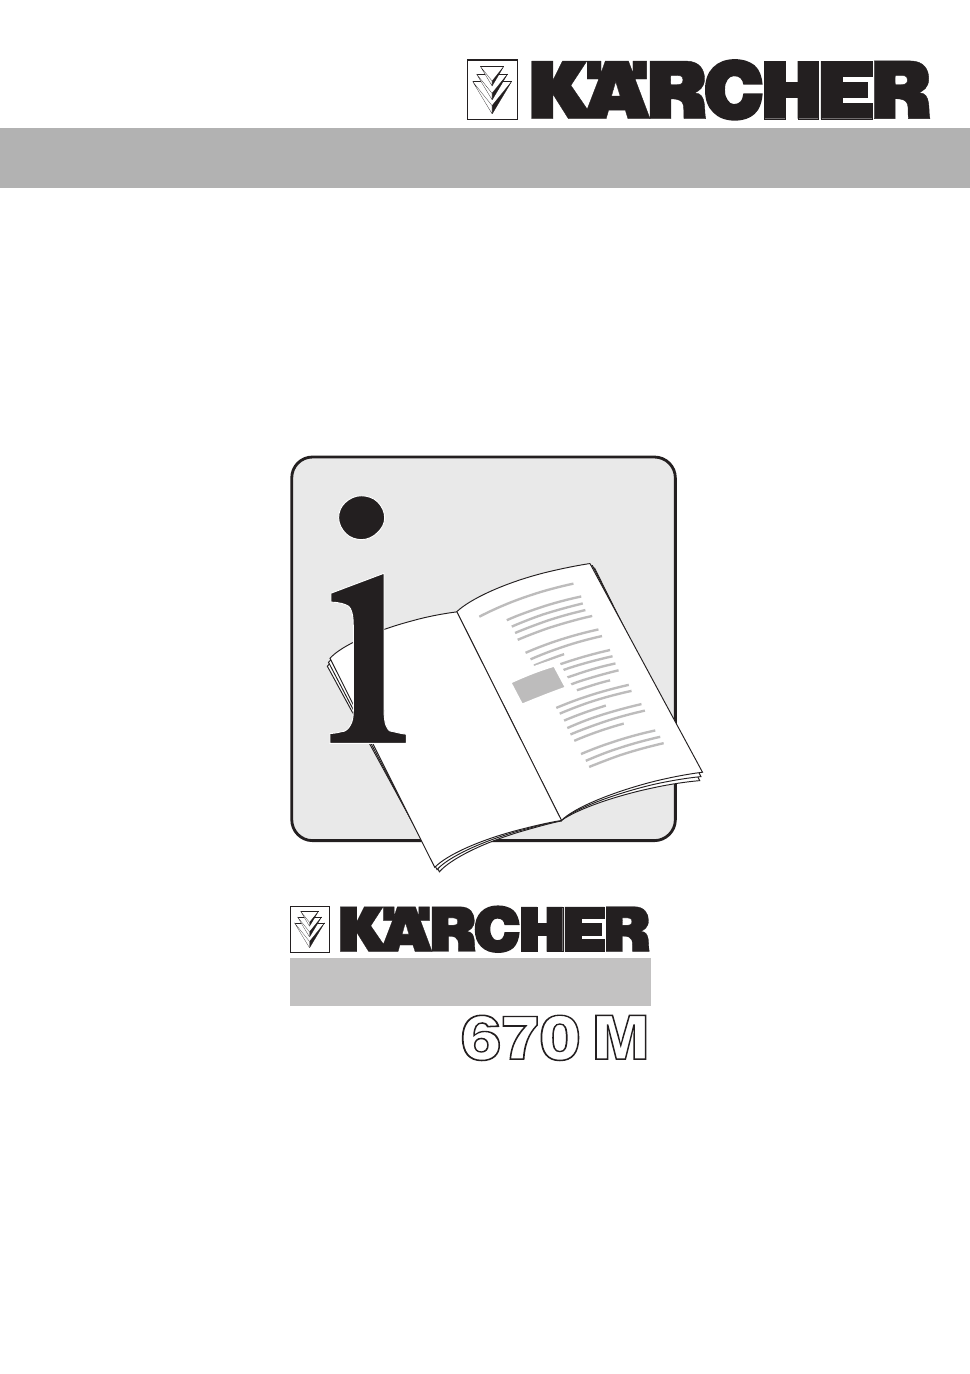 Karcher k 395 m user manual download